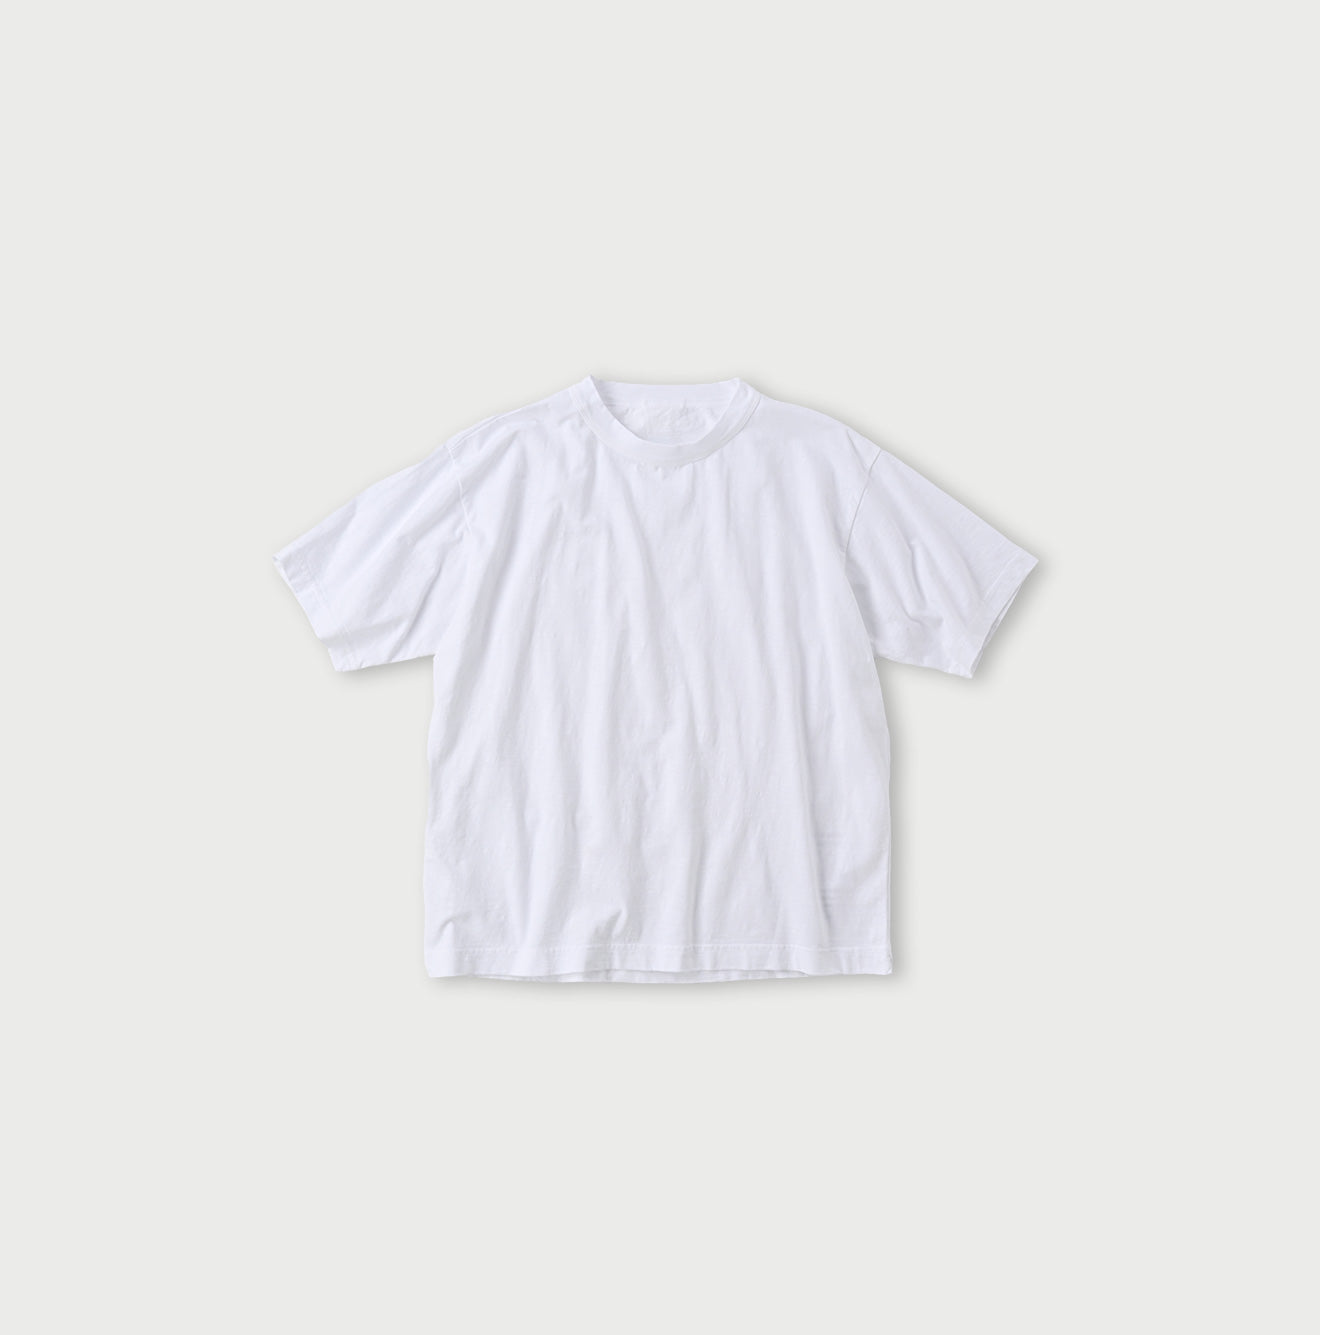 908 Ocean T-shirt – 45R Global